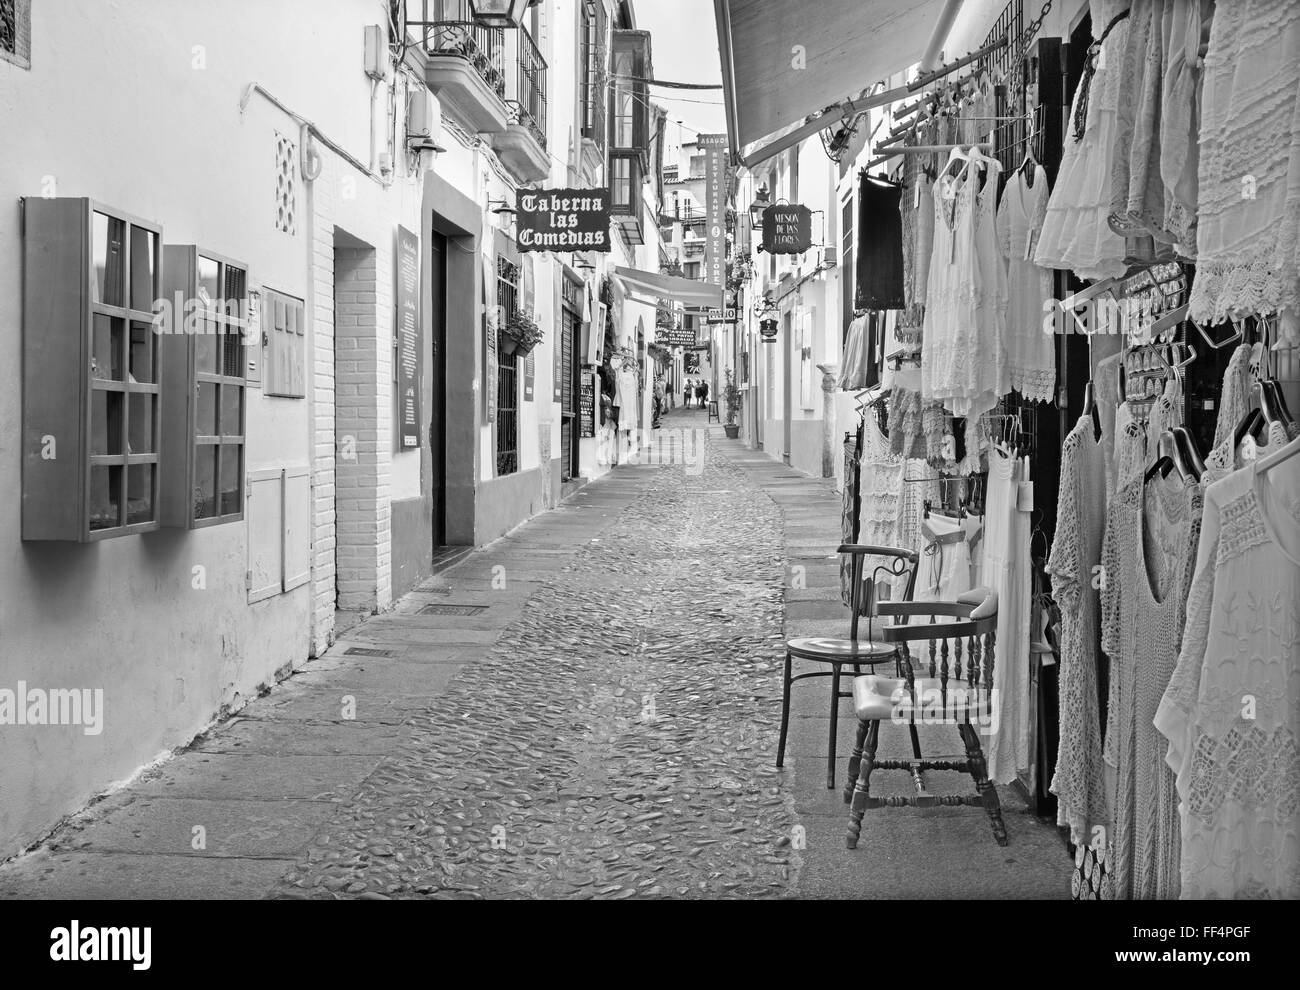 CORDOBA, Spagna - 26 Maggio 2015: la strada Velasques Bosco con i piccoli negozi e bar. Foto Stock